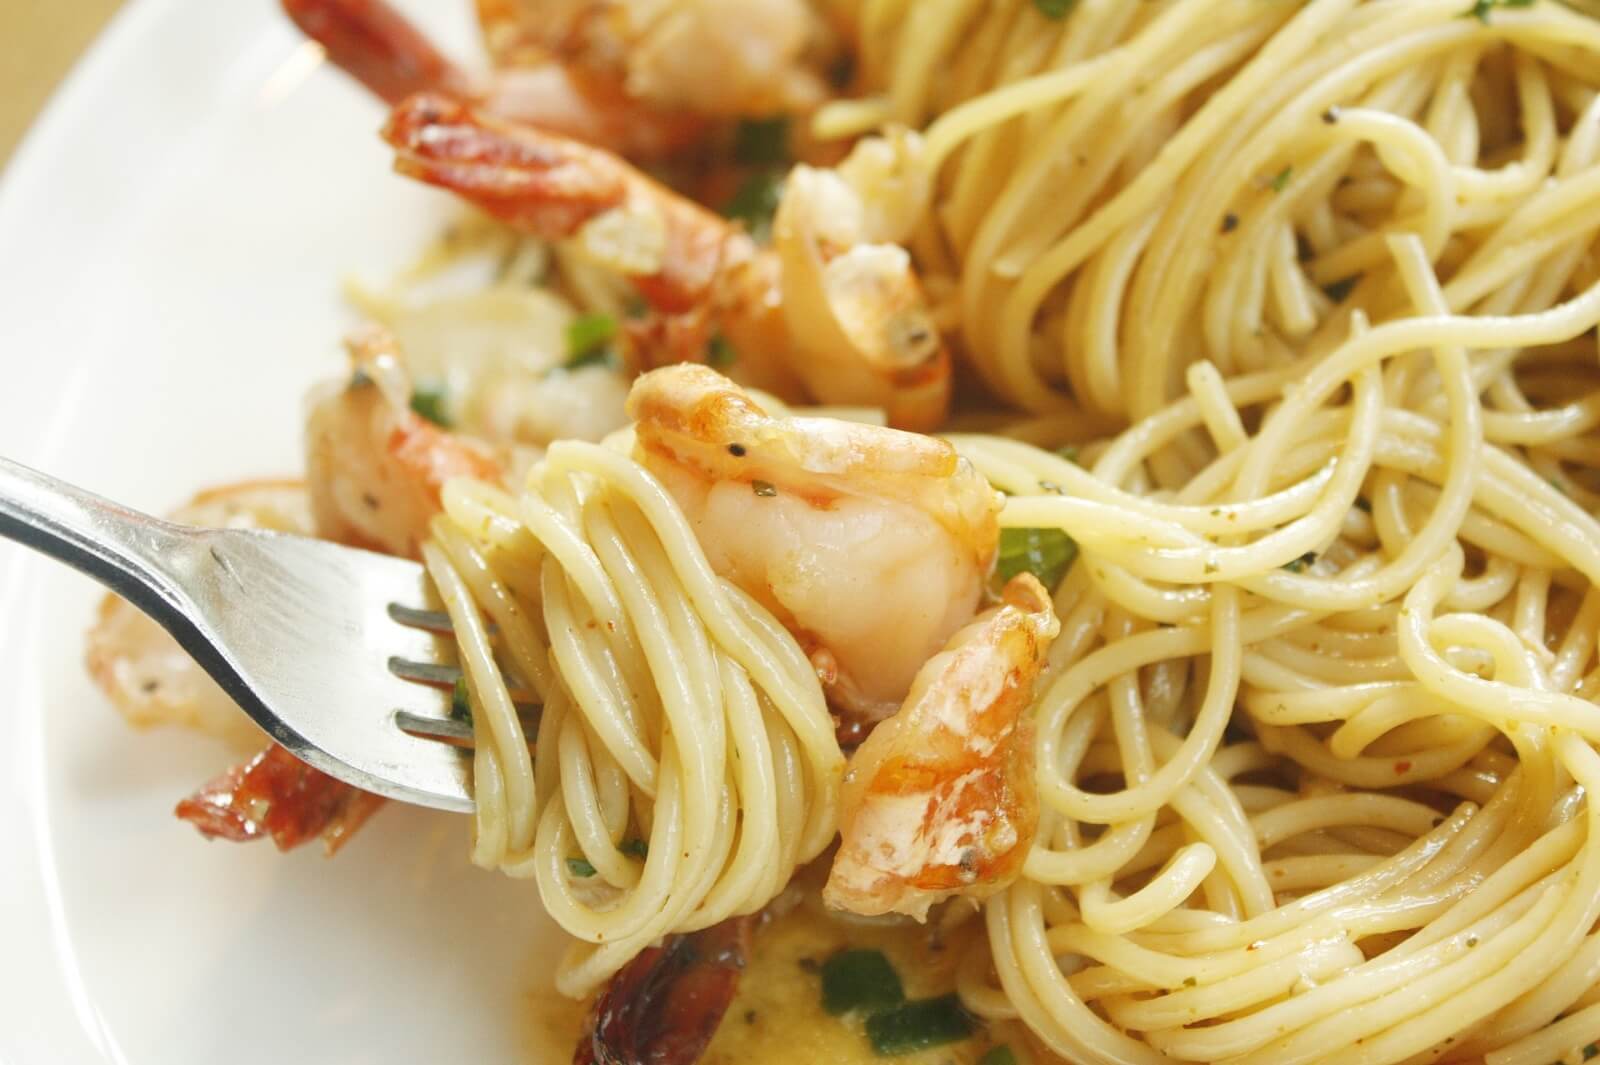 吃意大利面用叉子，如果给你一双筷子，你还会选择叉子吗？